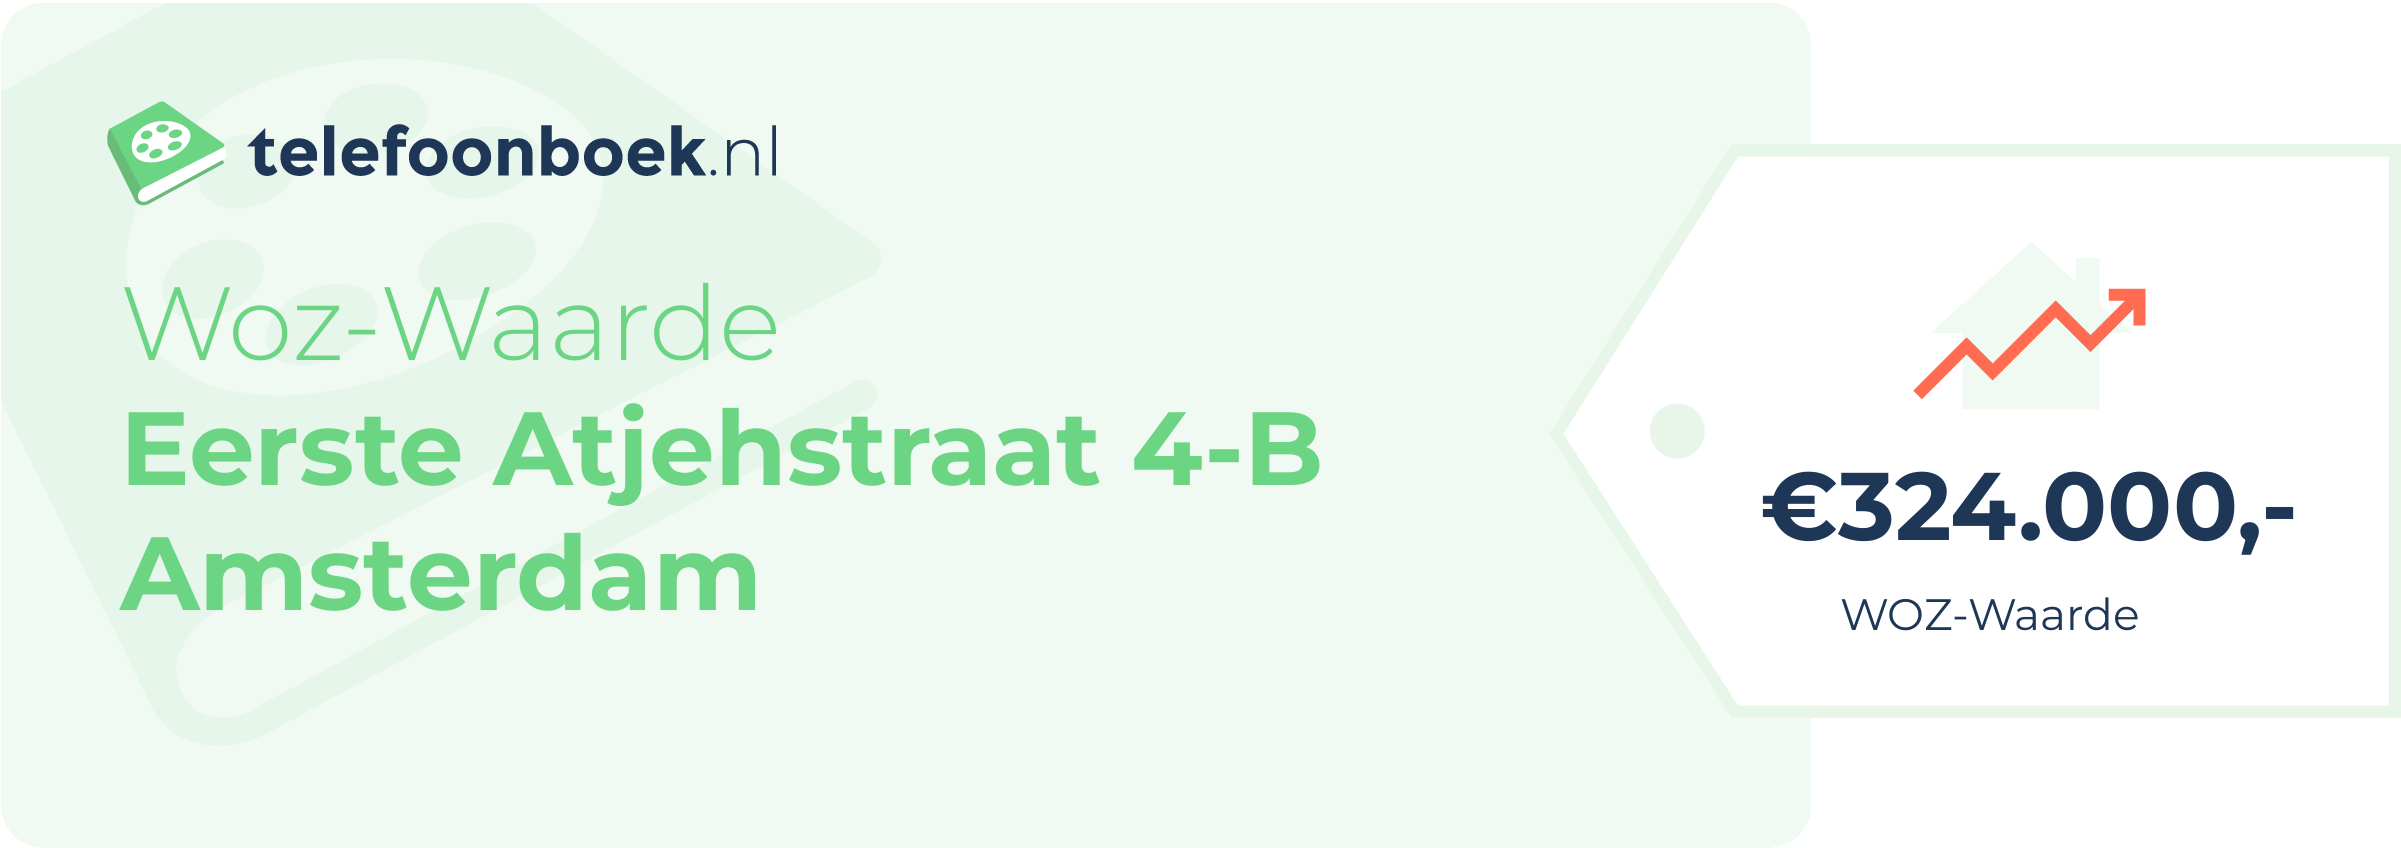 WOZ-waarde Eerste Atjehstraat 4-B Amsterdam